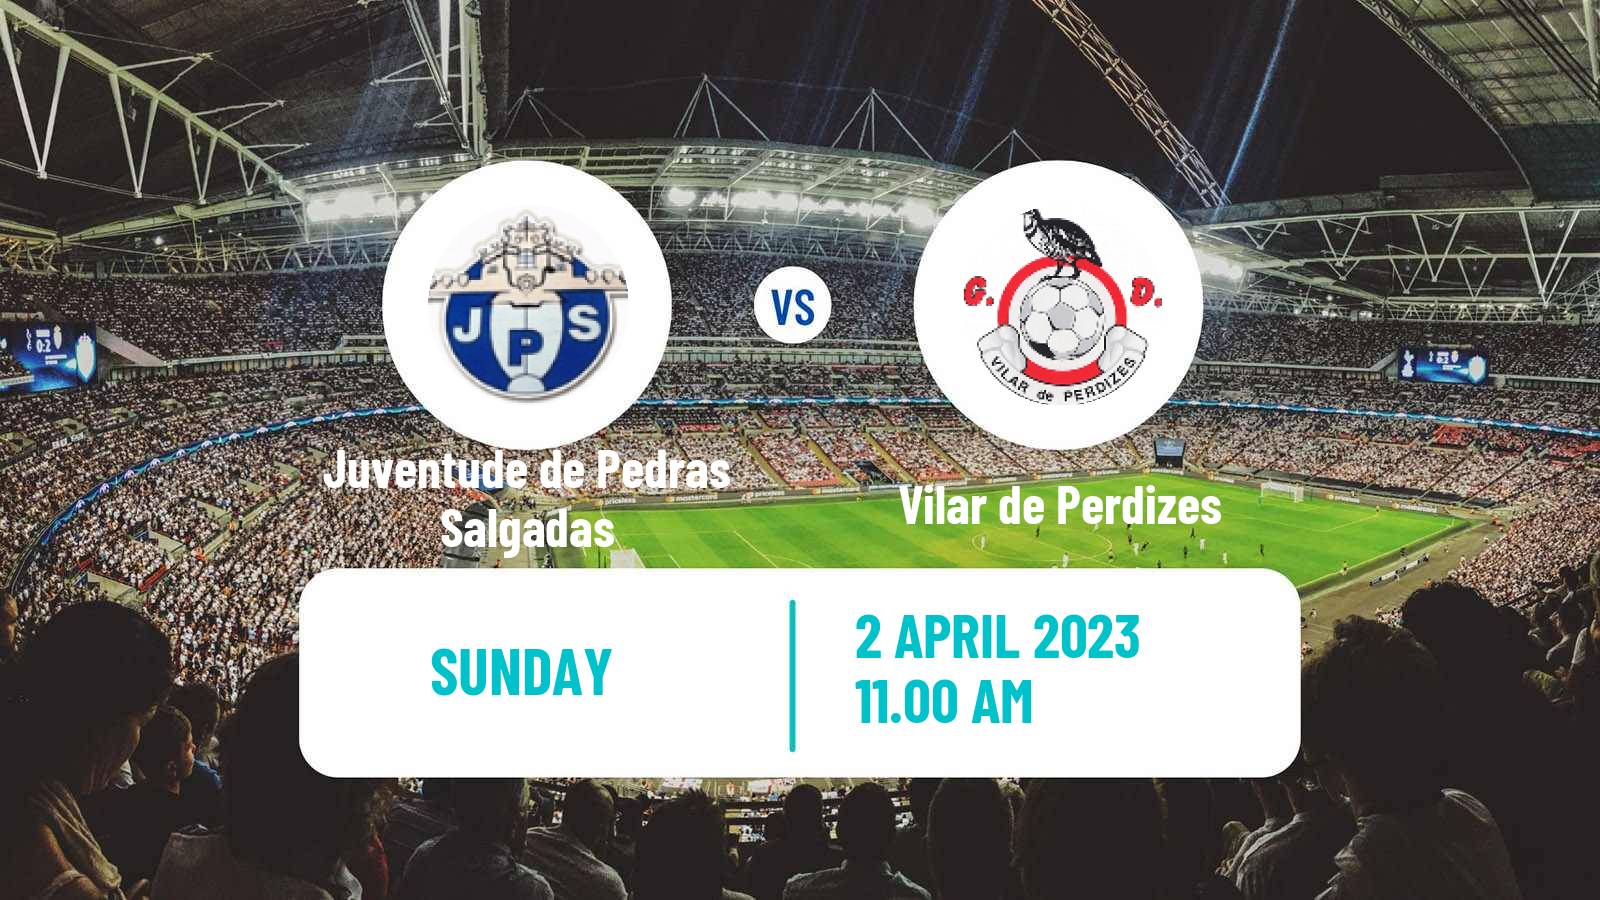 Soccer Campeonato de Portugal Juventude de Pedras Salgadas - Vilar de Perdizes